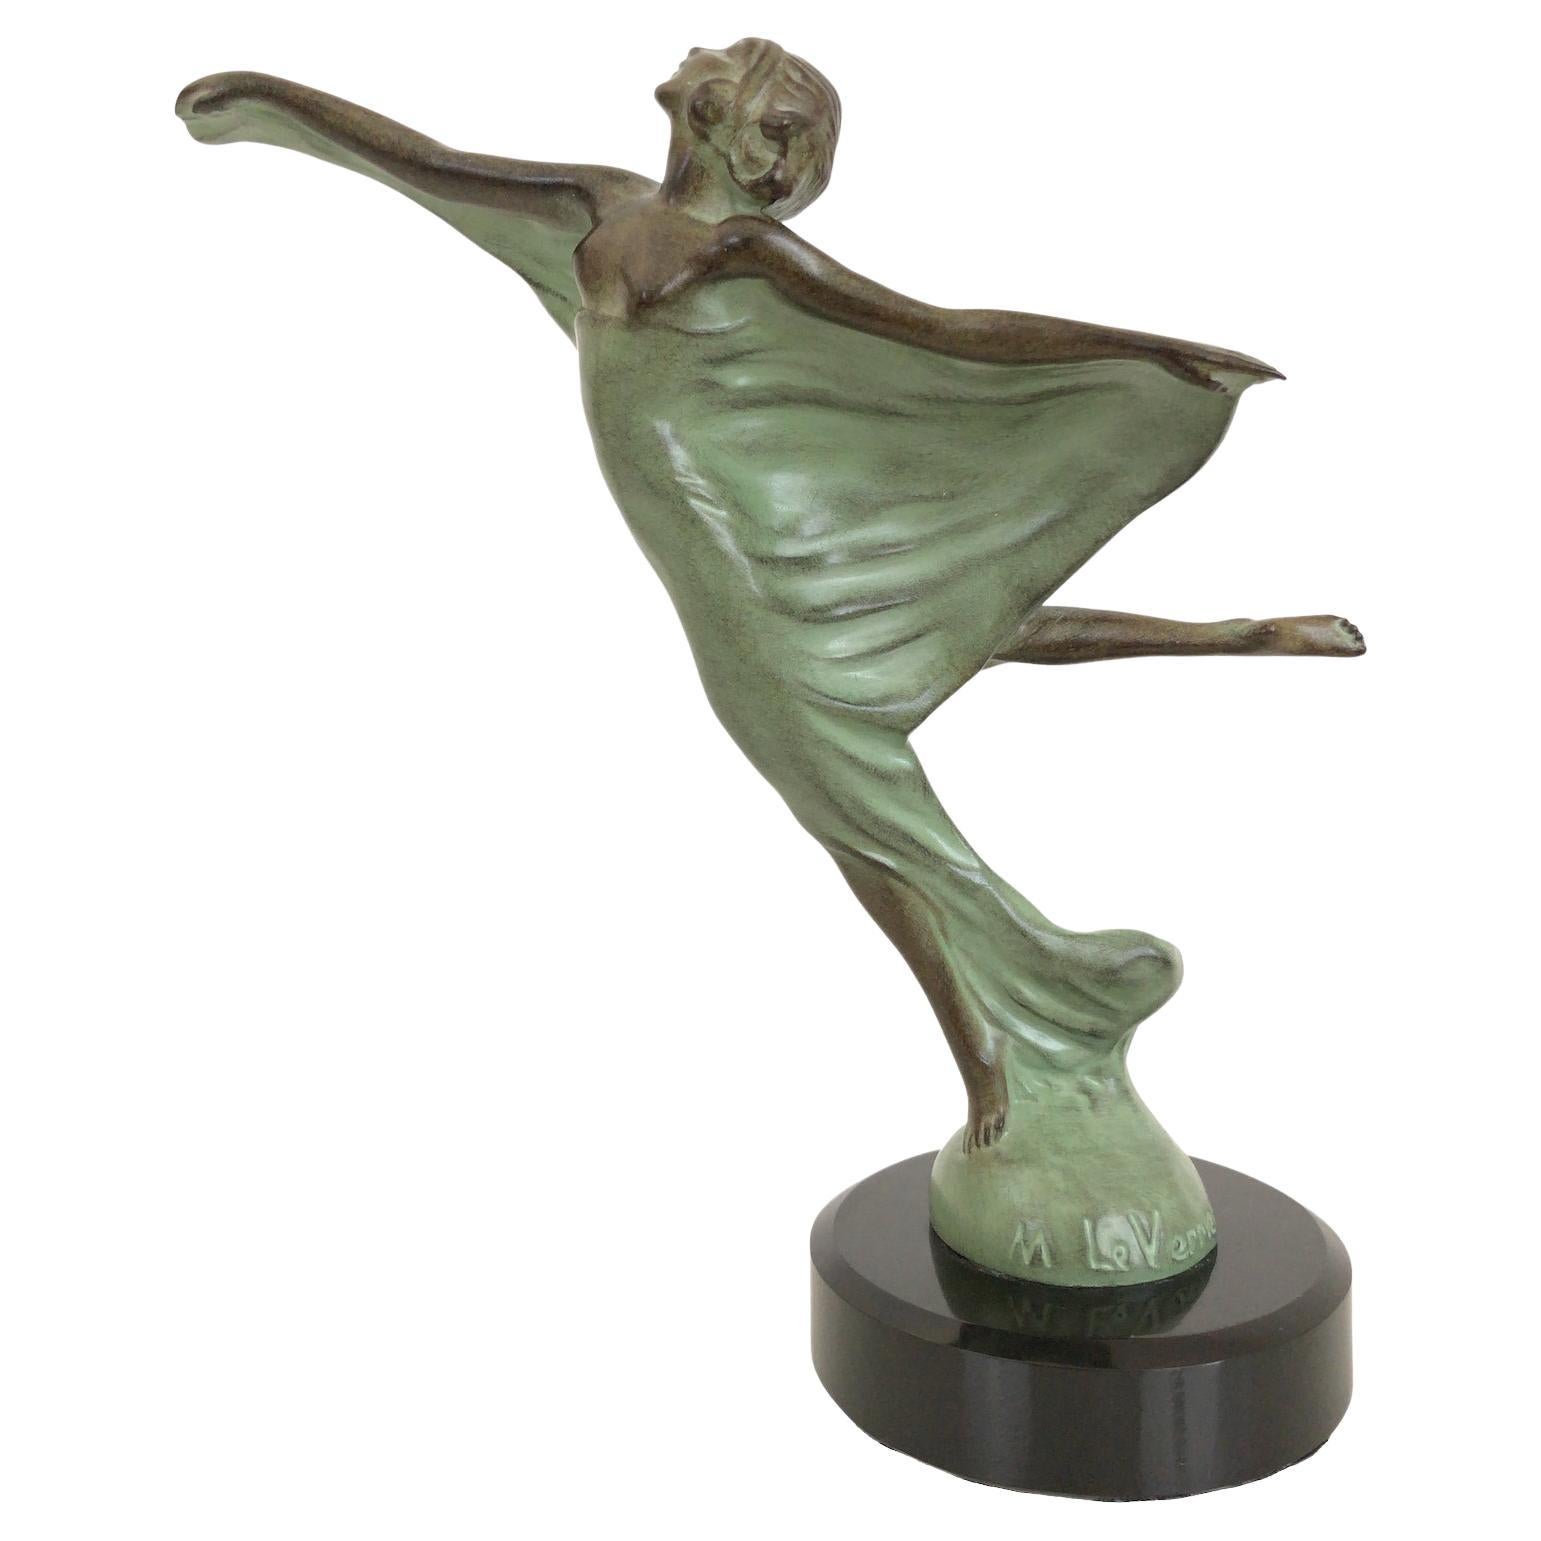 By Dancer Like Fairly Graceful Nouveau Art Gift Handmade bronze sculpture M 